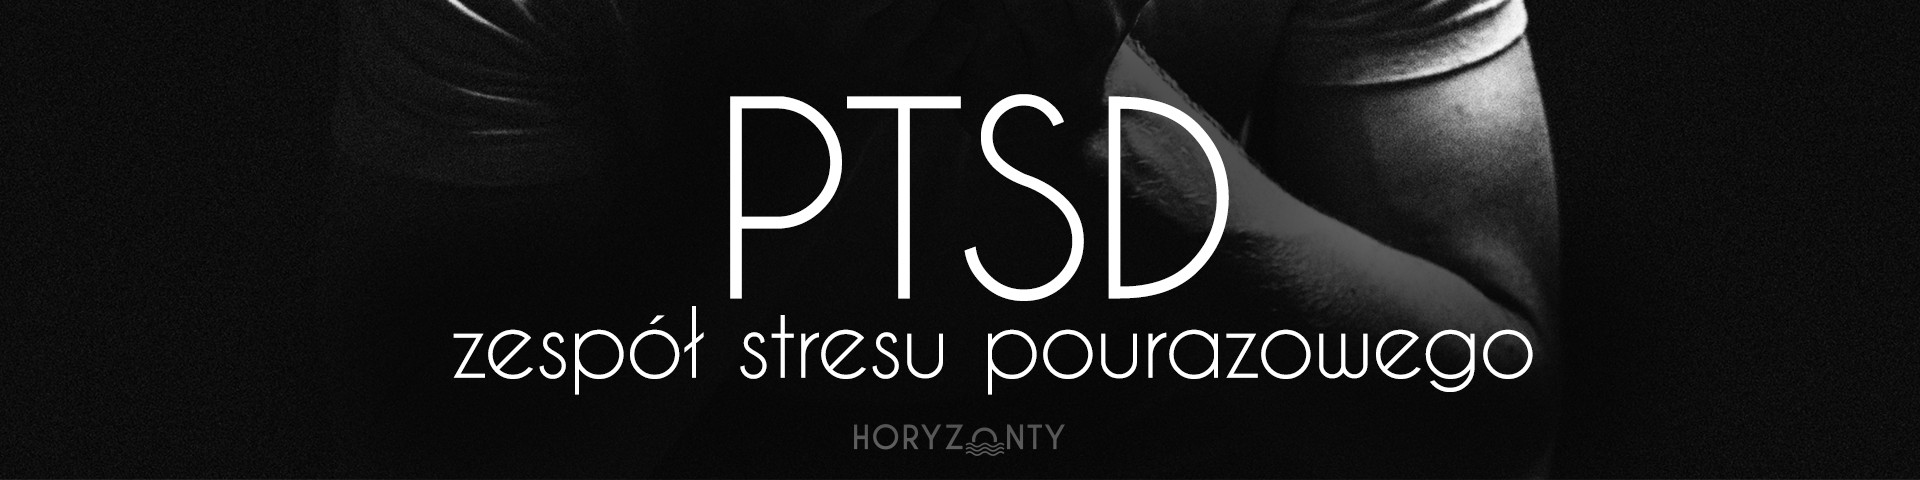 PTSD – zespół stresu pourazowego